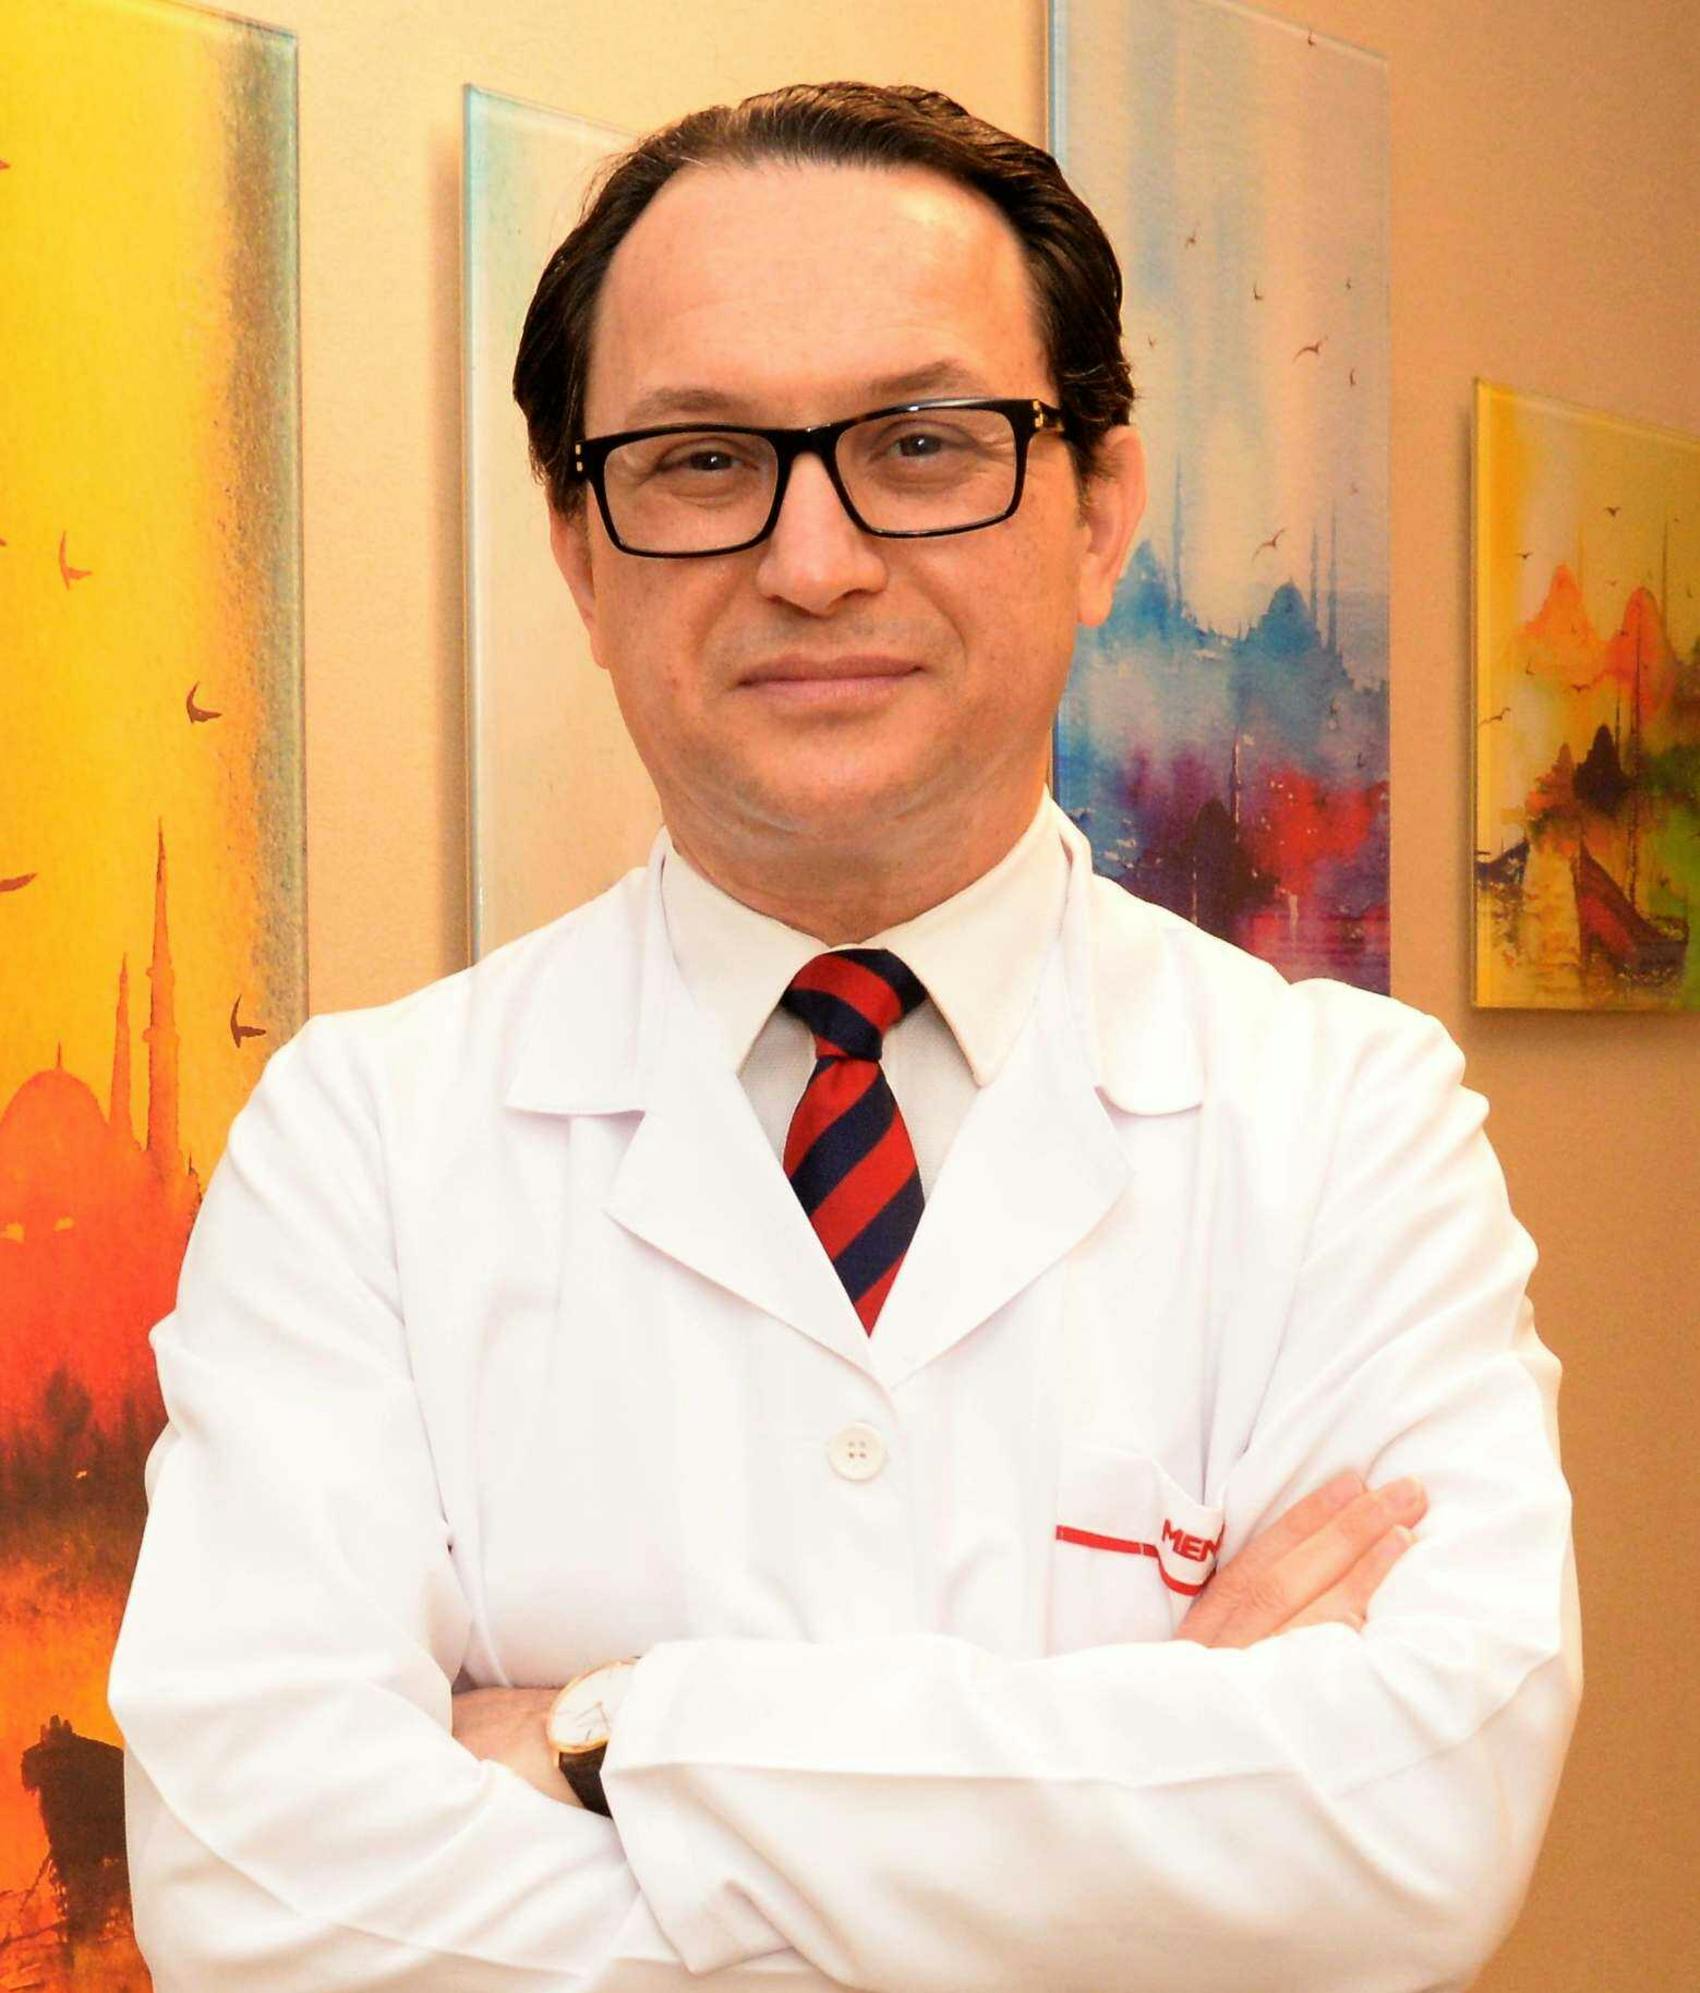 Dr. Halil Coskun